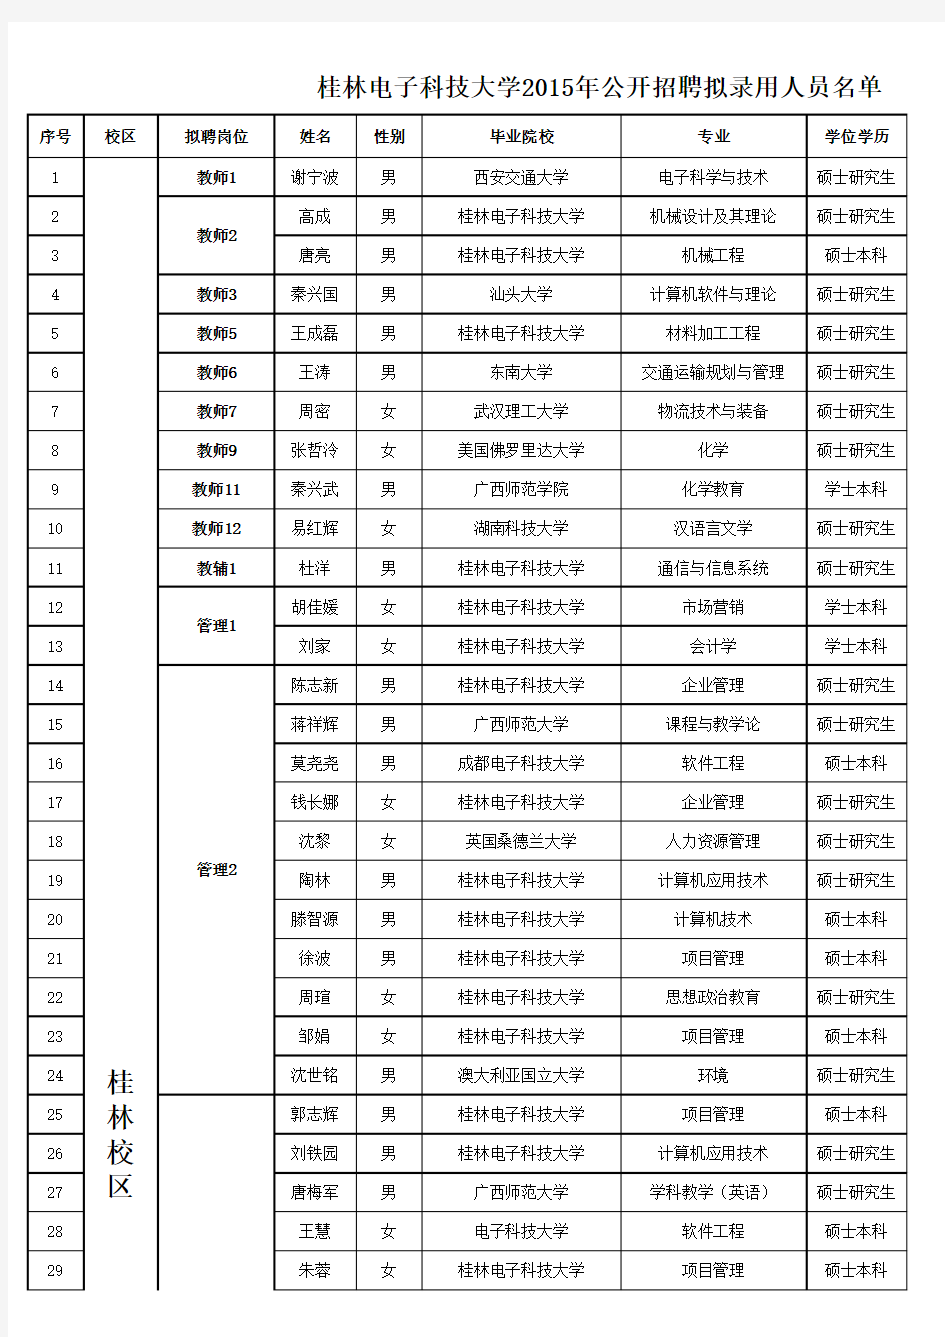 桂林电子科技大学2015年度公开招录人员名单